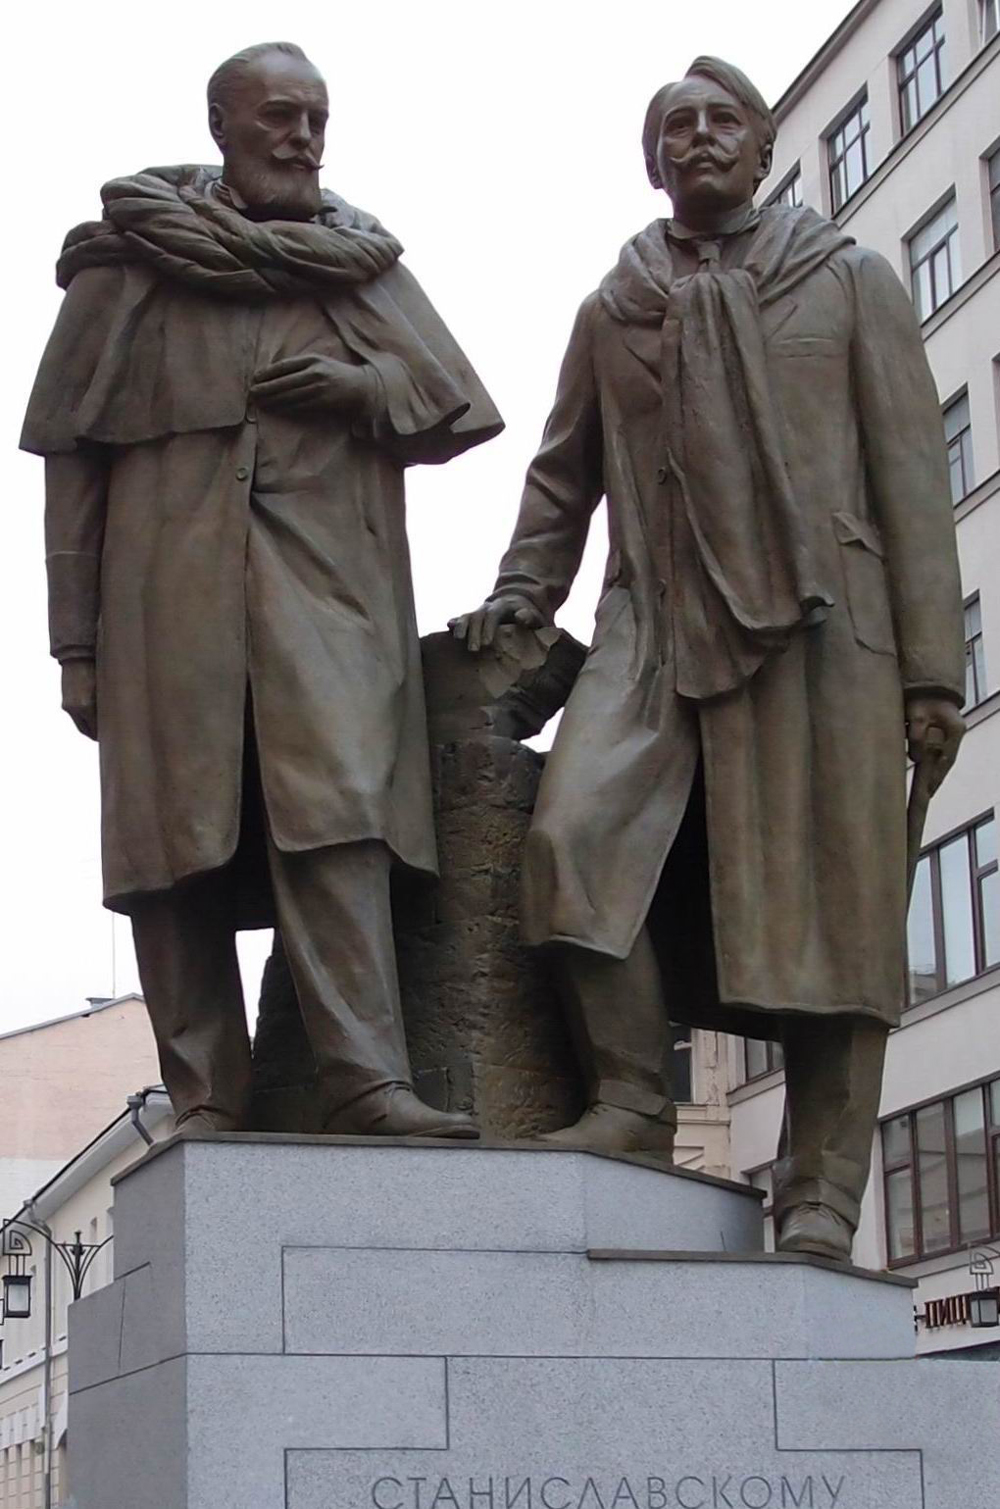 Памятник Станиславскому К.С. (1863-1938) и Немировичу-Данченко В.И. (1858-1943), автор А.Морозов, в Камергерском переулке, открыт 3.9.2014.